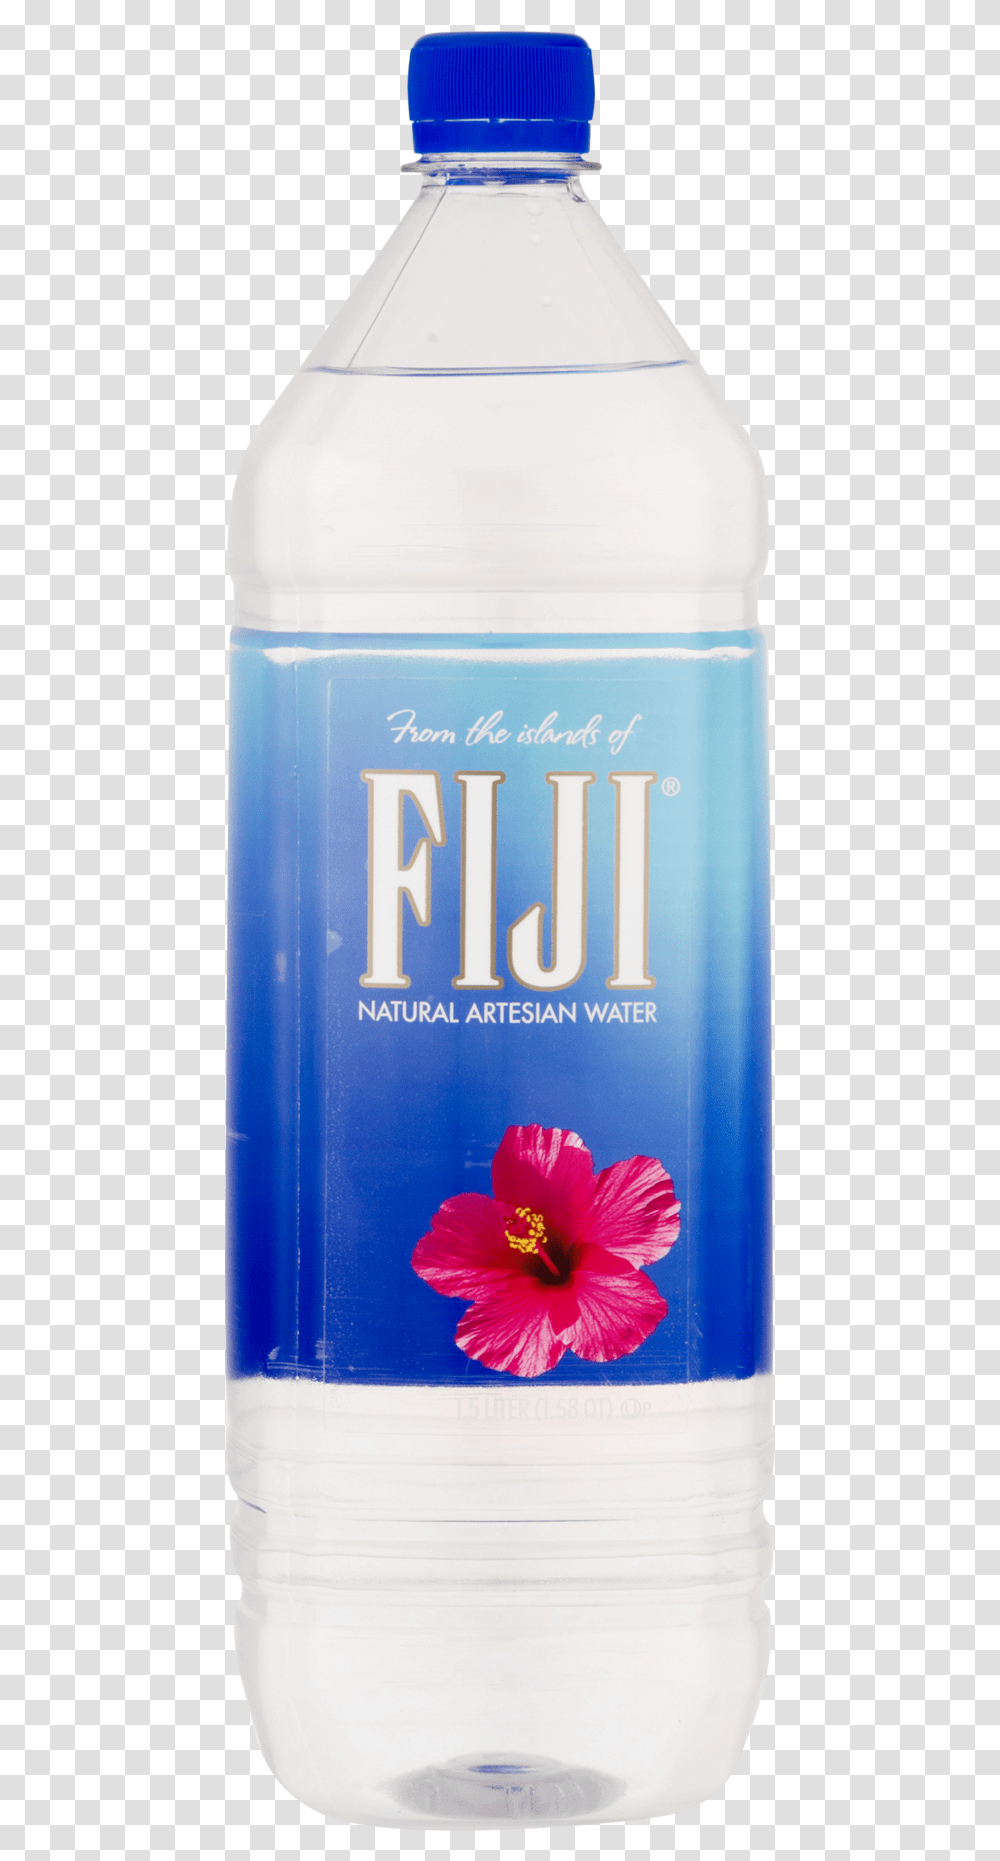 Fiji Bottle Water Bottle, Milk, Beverage, Drink, Liquor Transparent Png